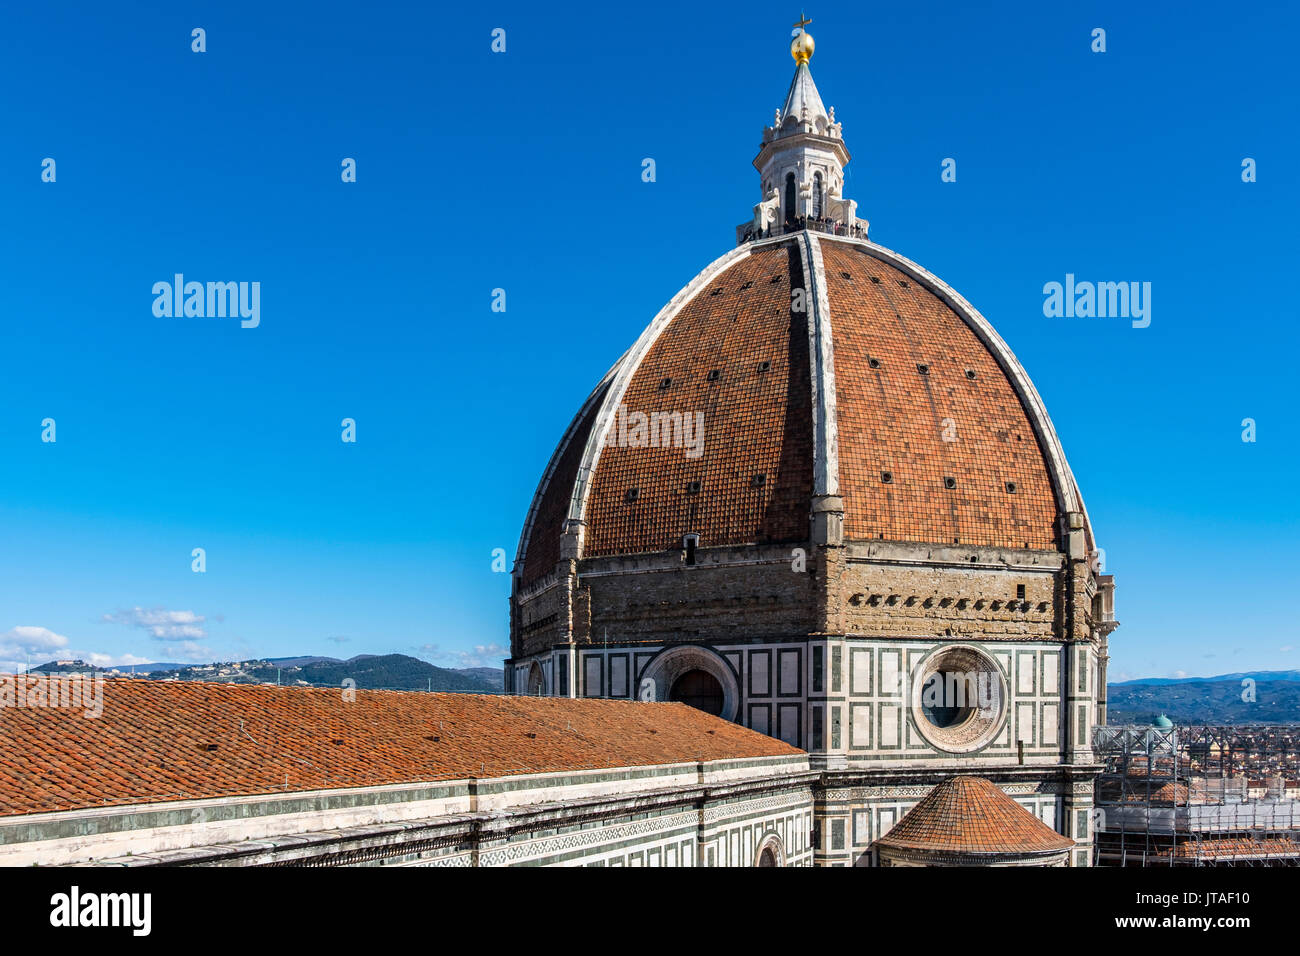 La cupola del Brunelleschi, Cattedrale di Santa Maria del Fiore (Duomo), il Sito Patrimonio Mondiale dell'UNESCO, Firenze, Toscana, Italia, Europa Foto Stock